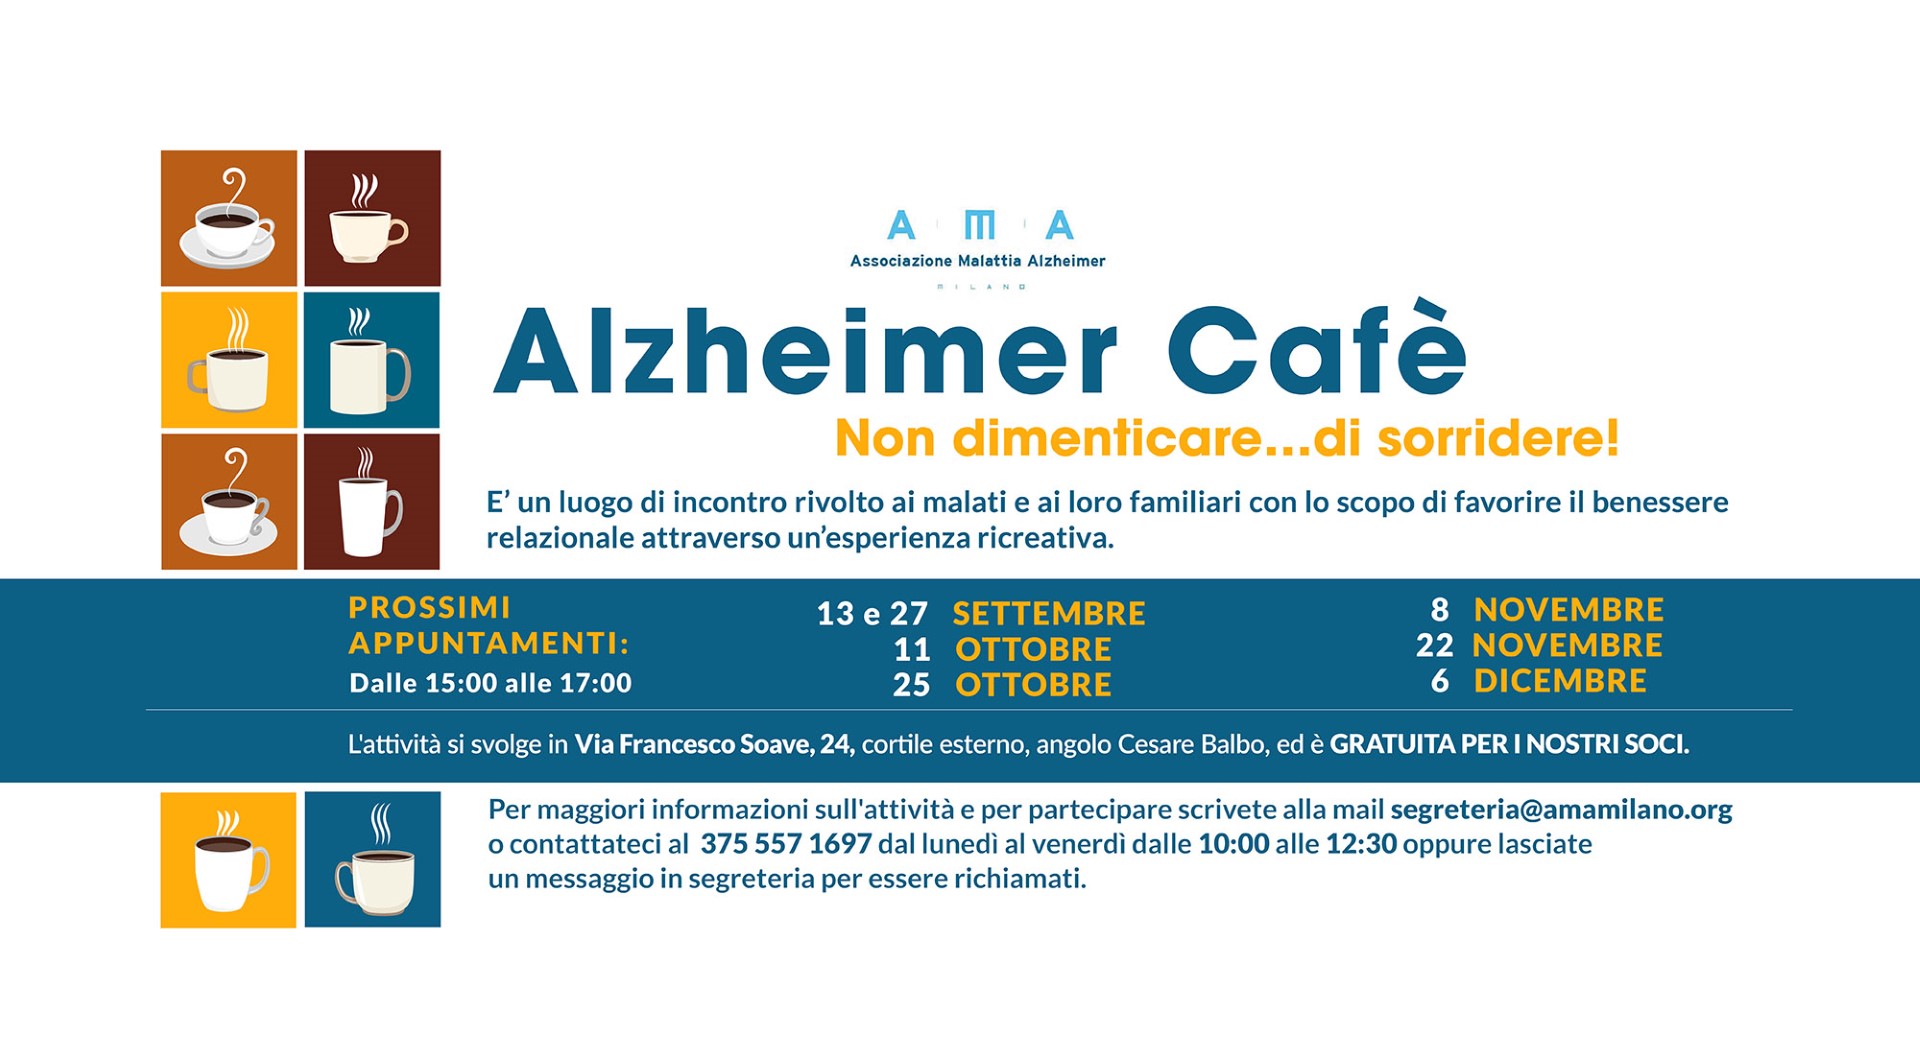 A.M.A. Milano - Alzheimer cafè